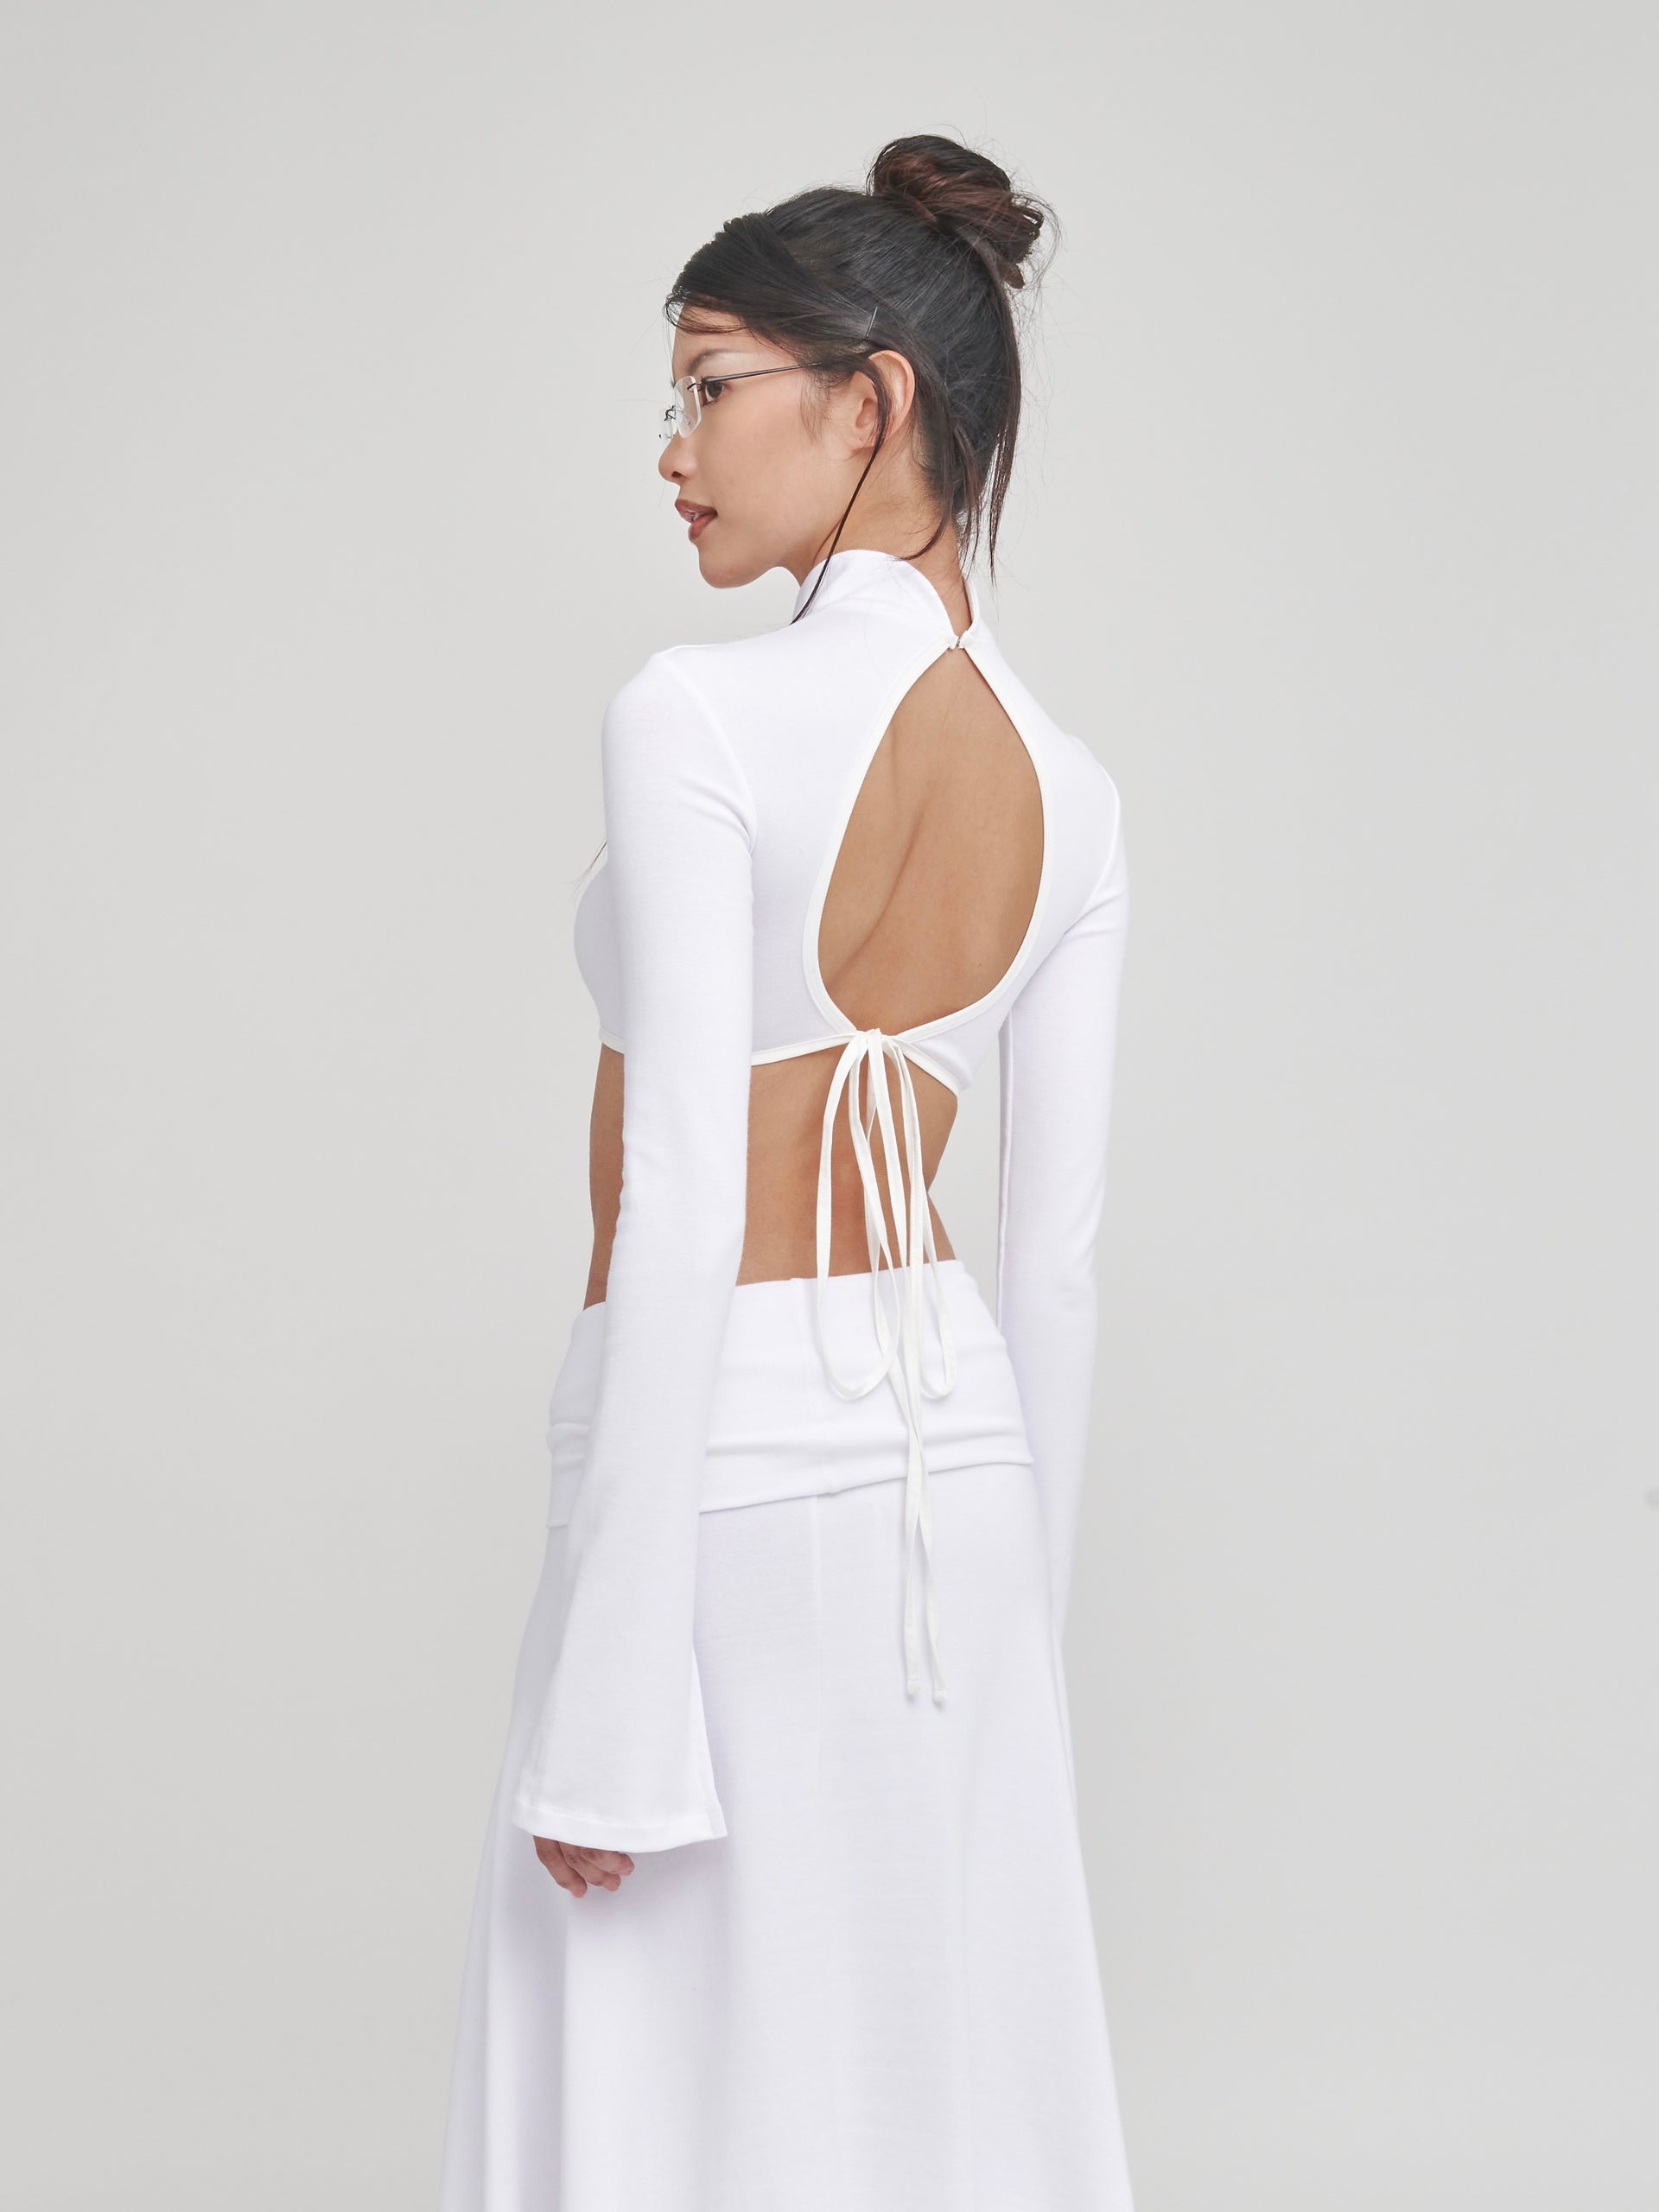 Gatherer Skirt/Dress - White